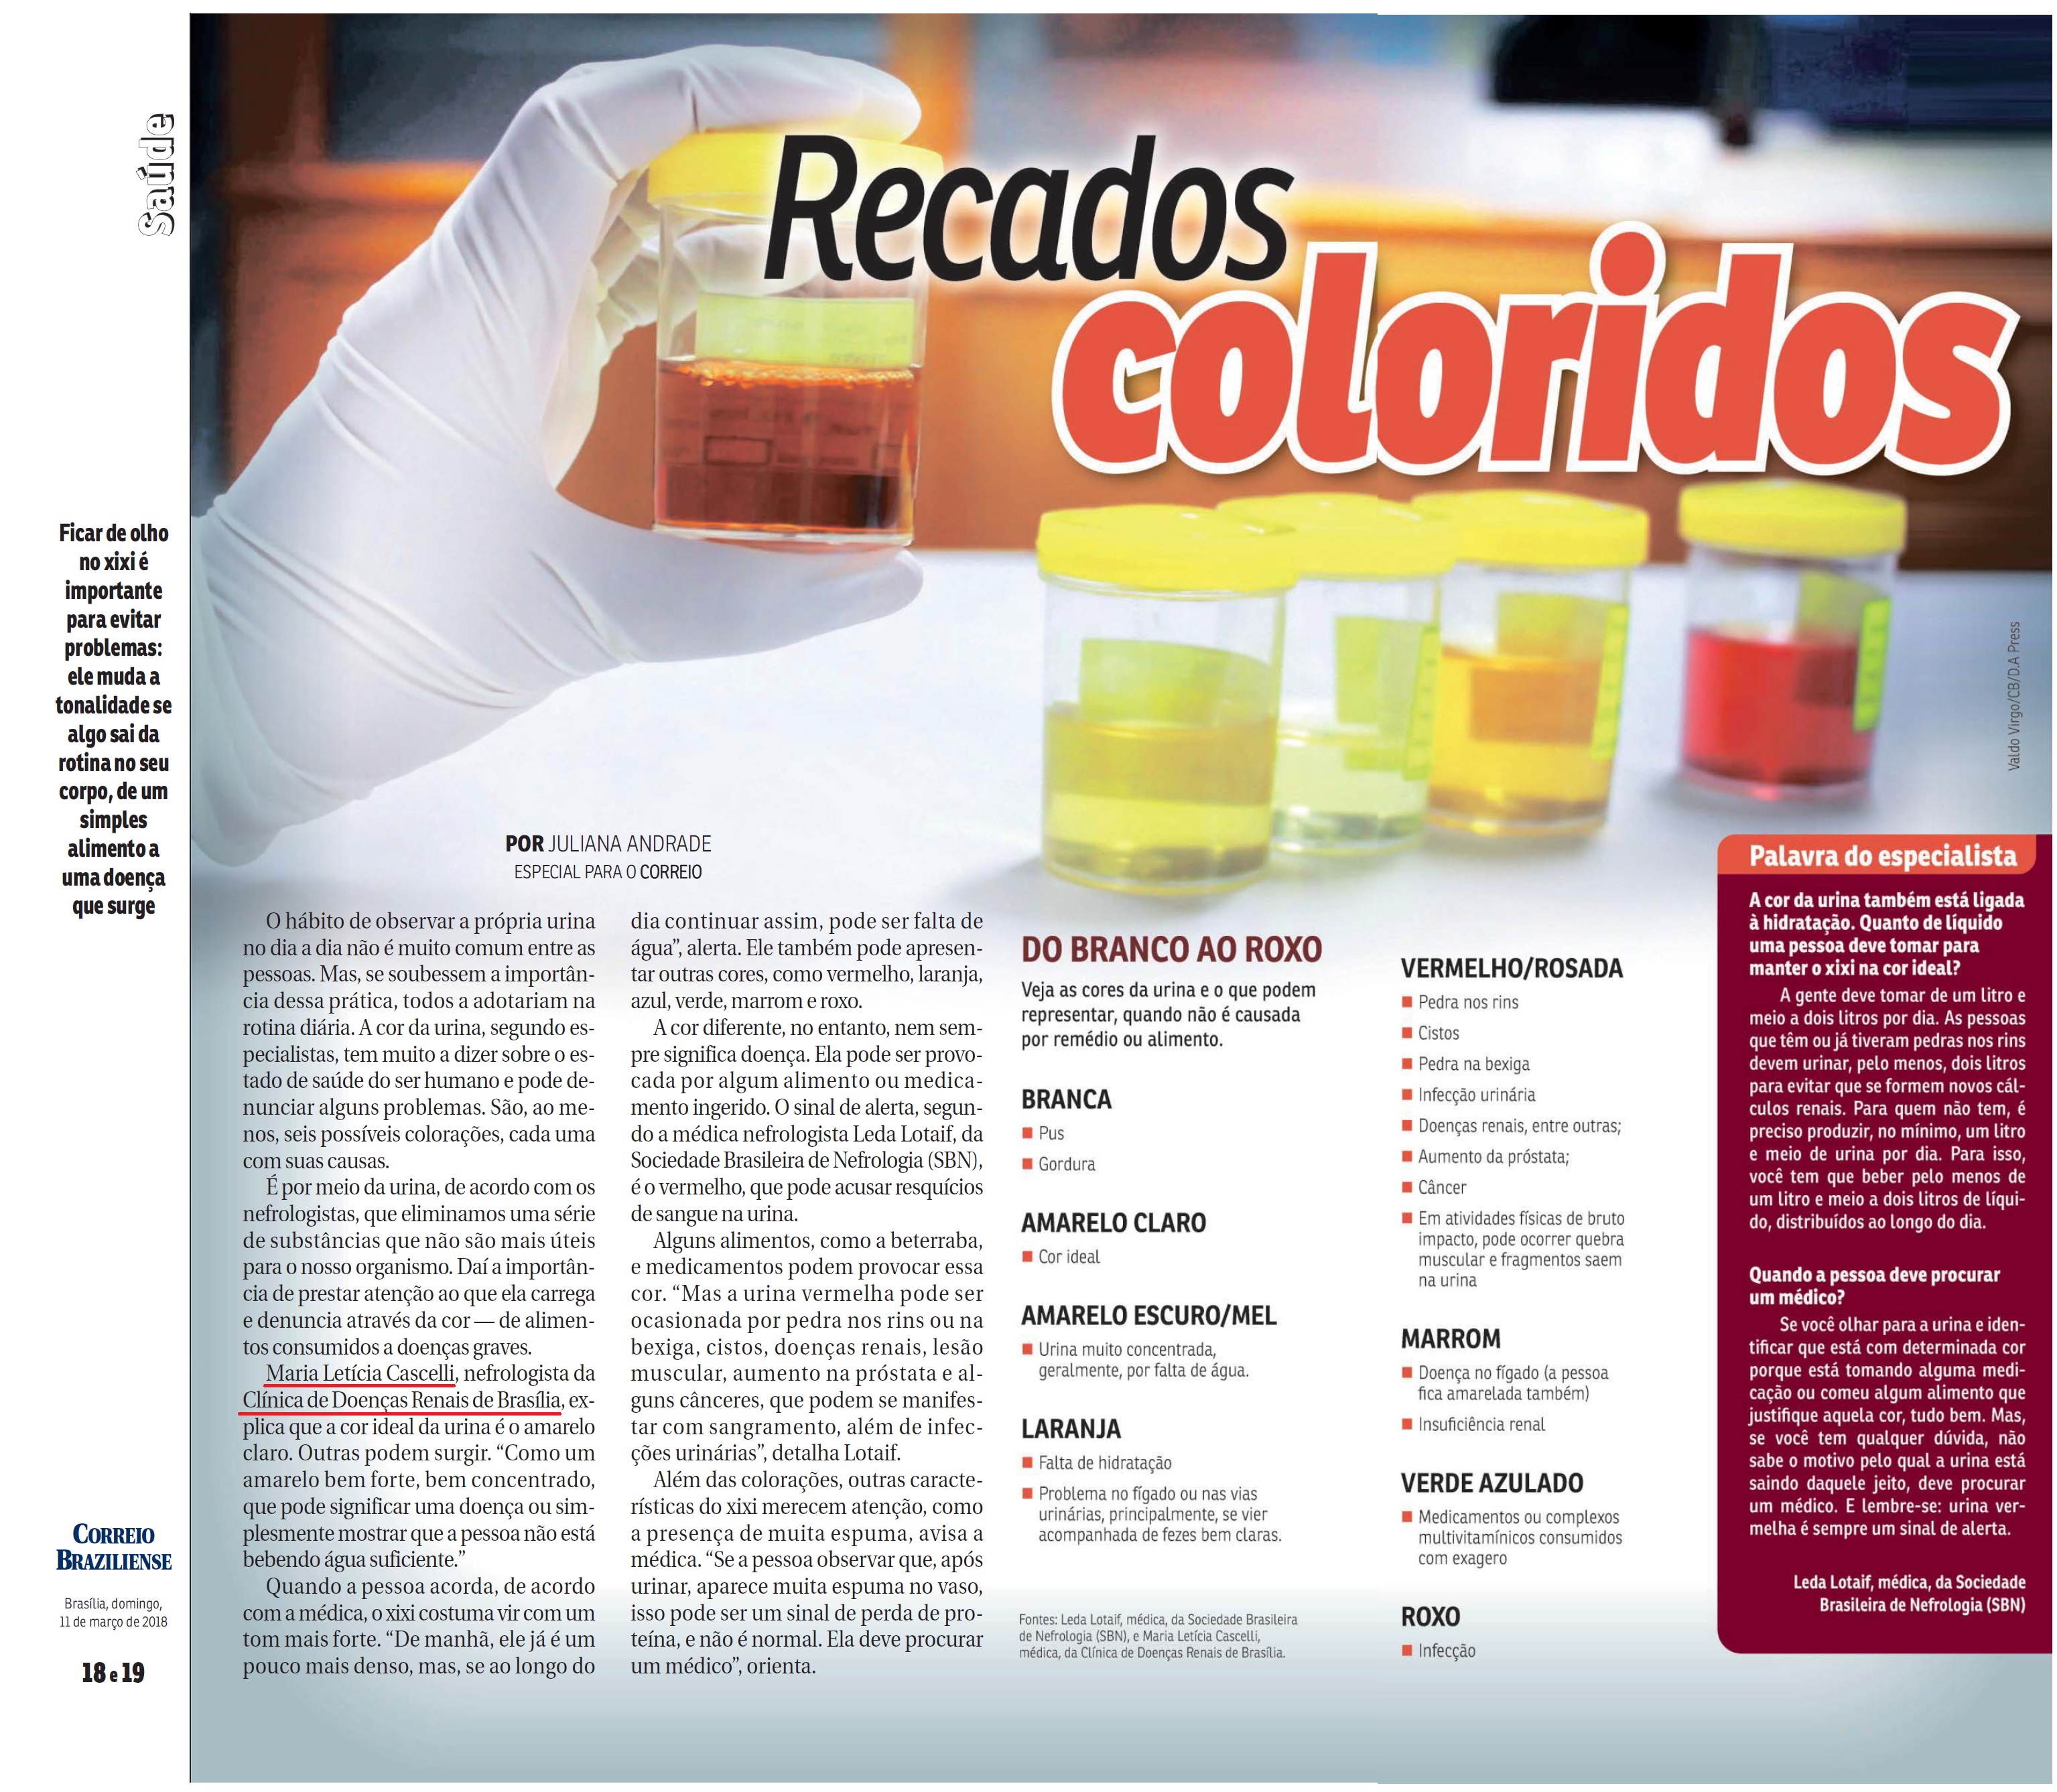 Revista do Correio - Dra. Maria Letícia Cascelli CDRB - 11-03-2018